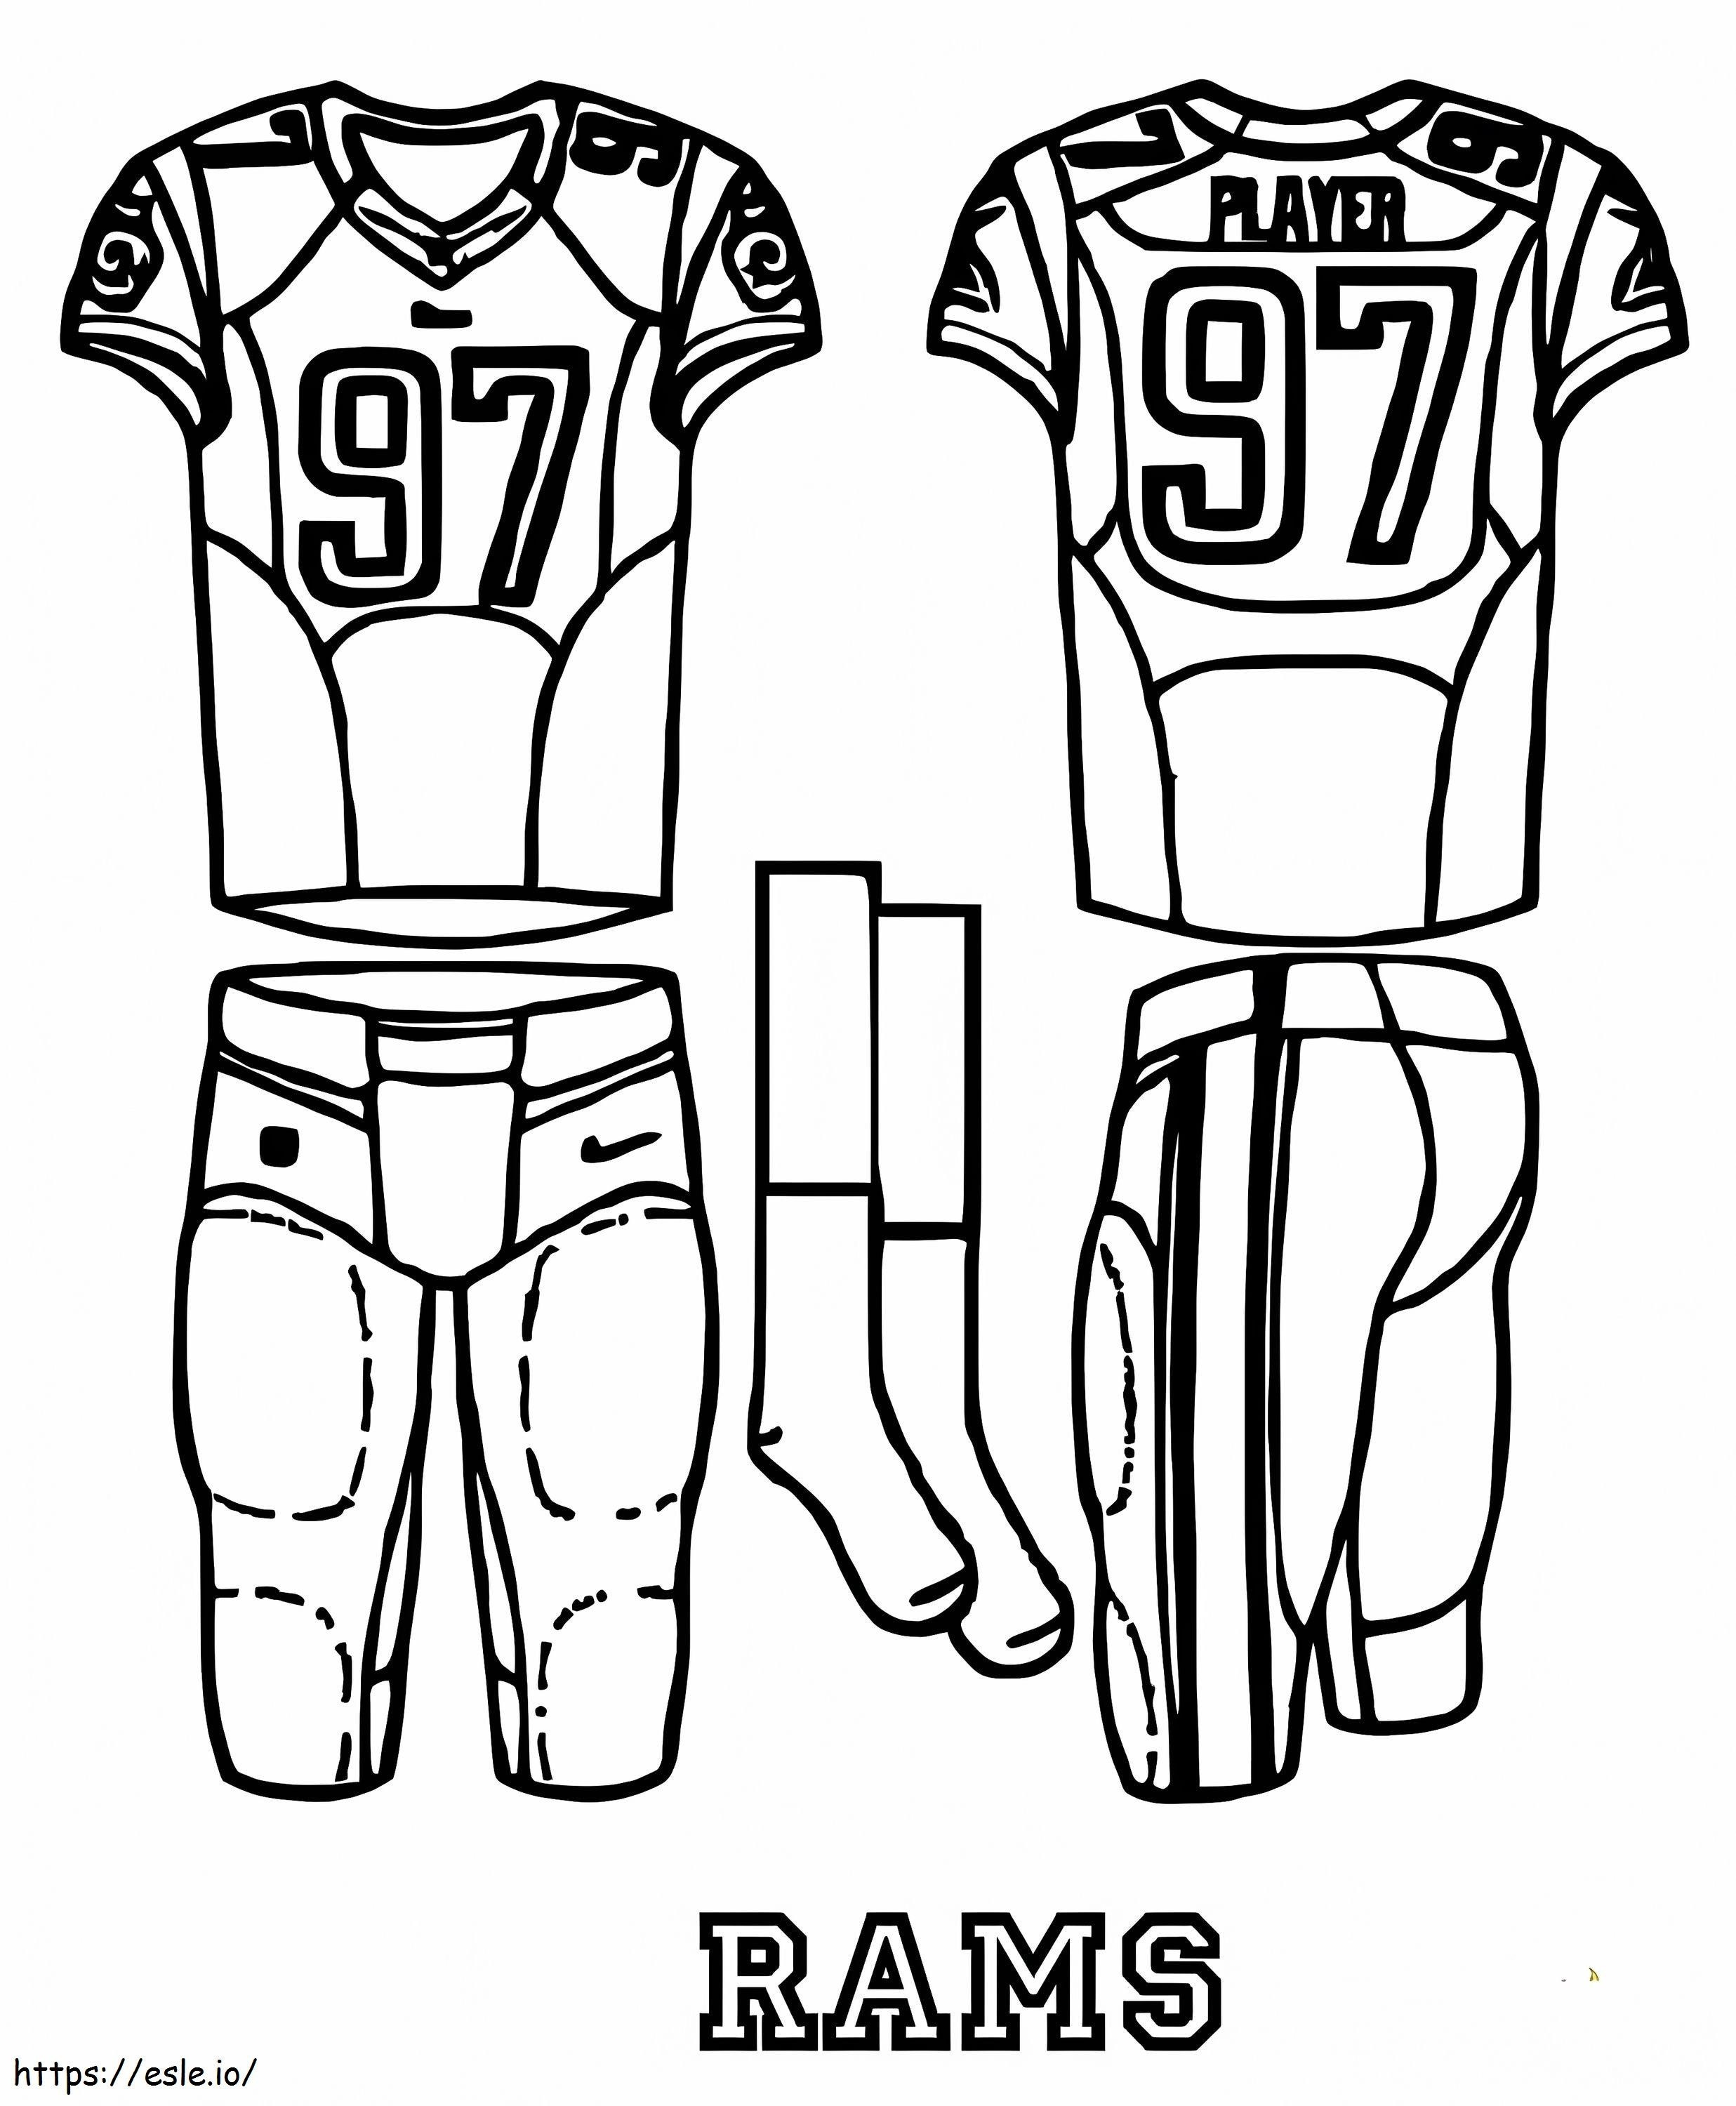 Los Angeles Rams Uniform coloring page